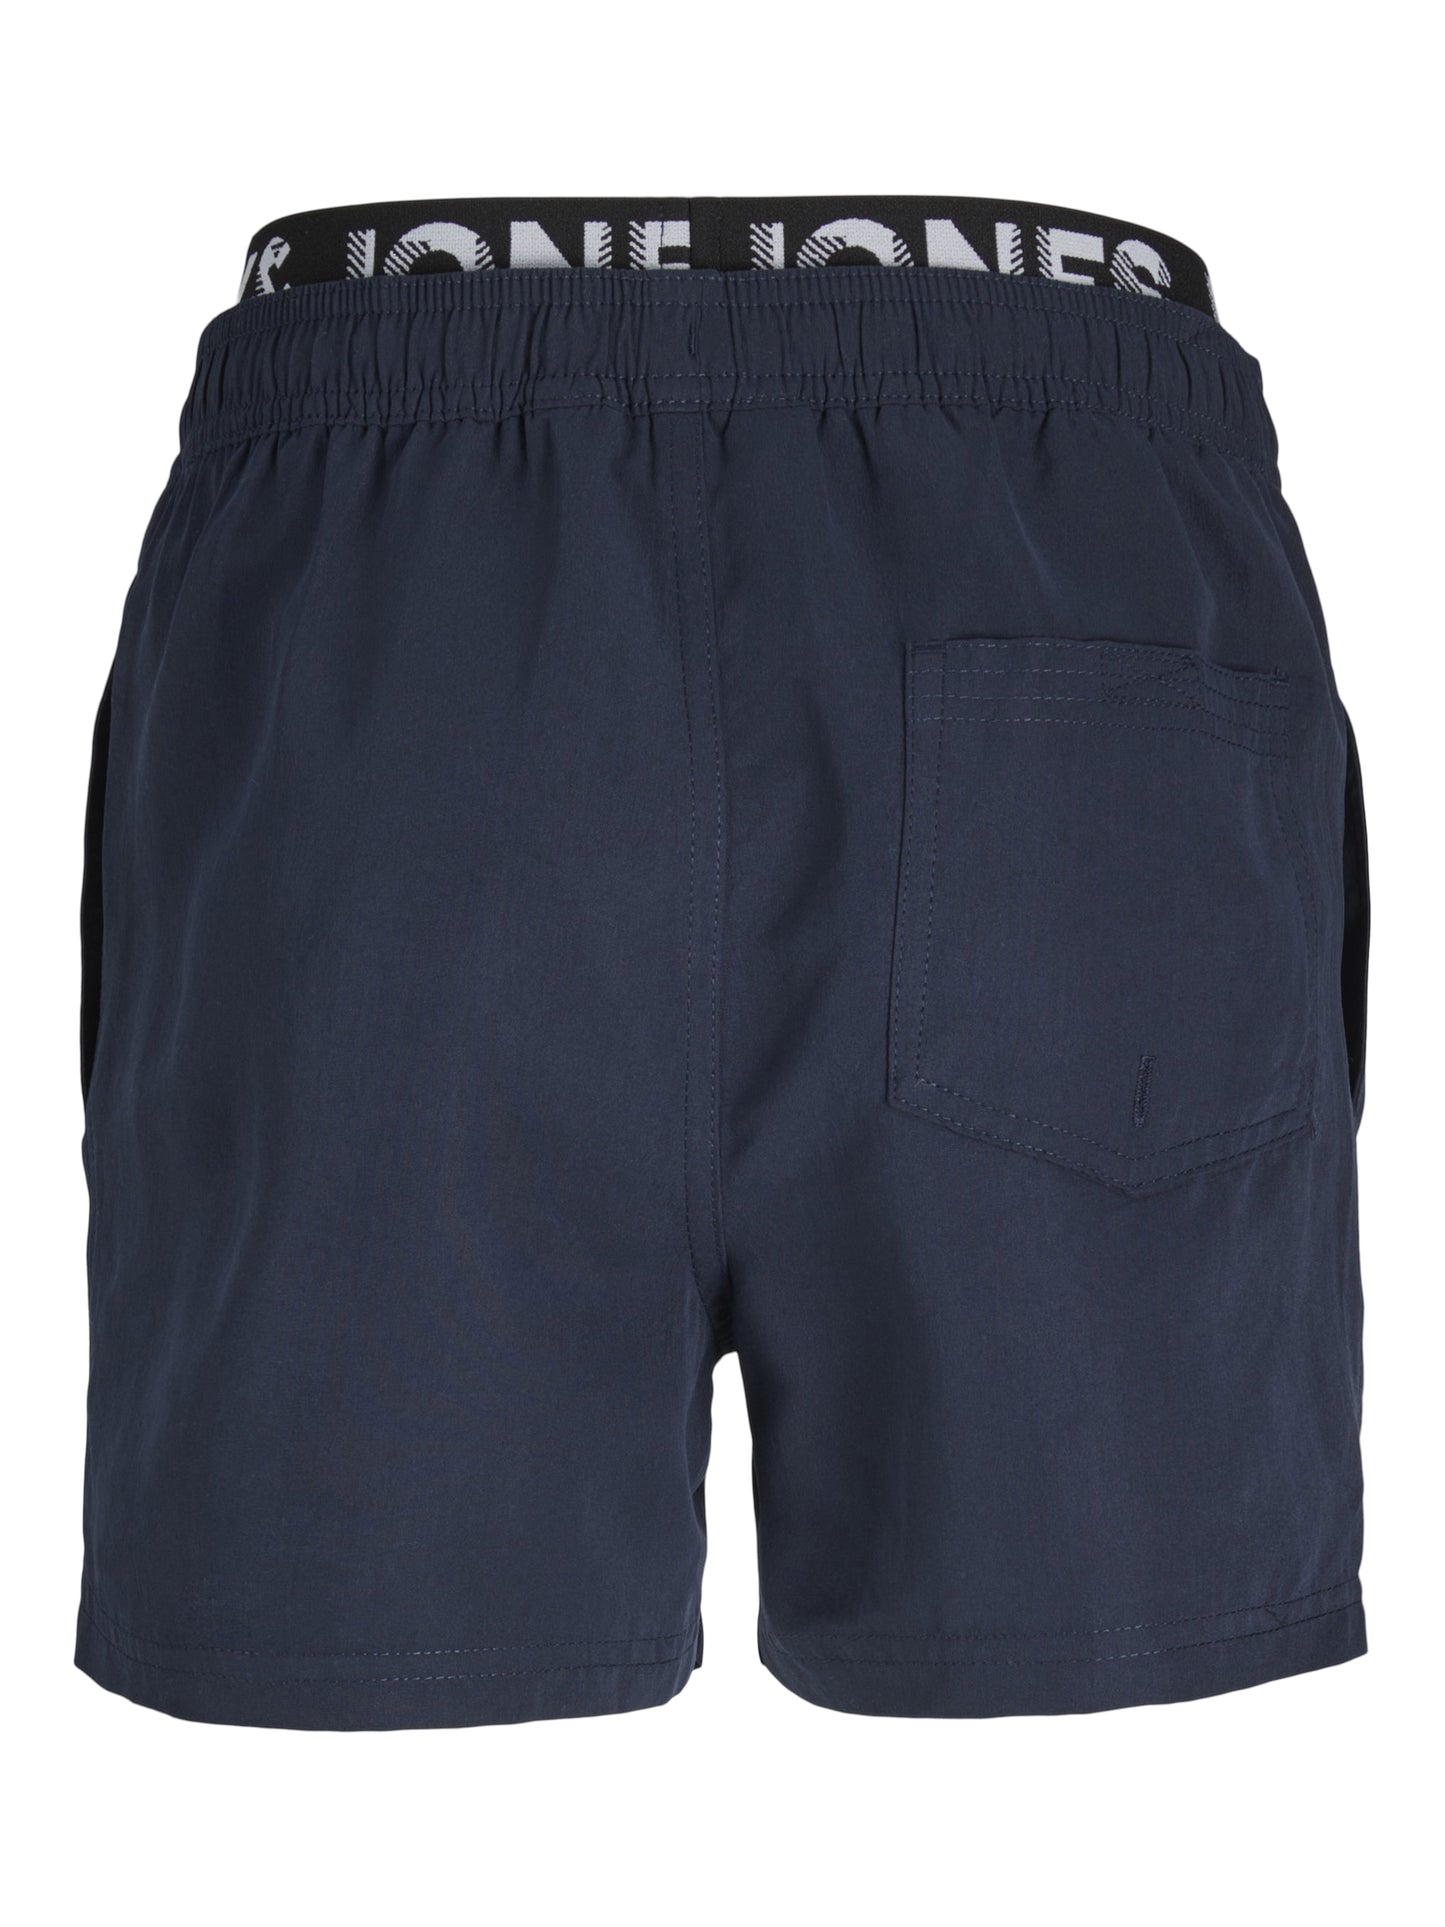 Badshorts - shorts